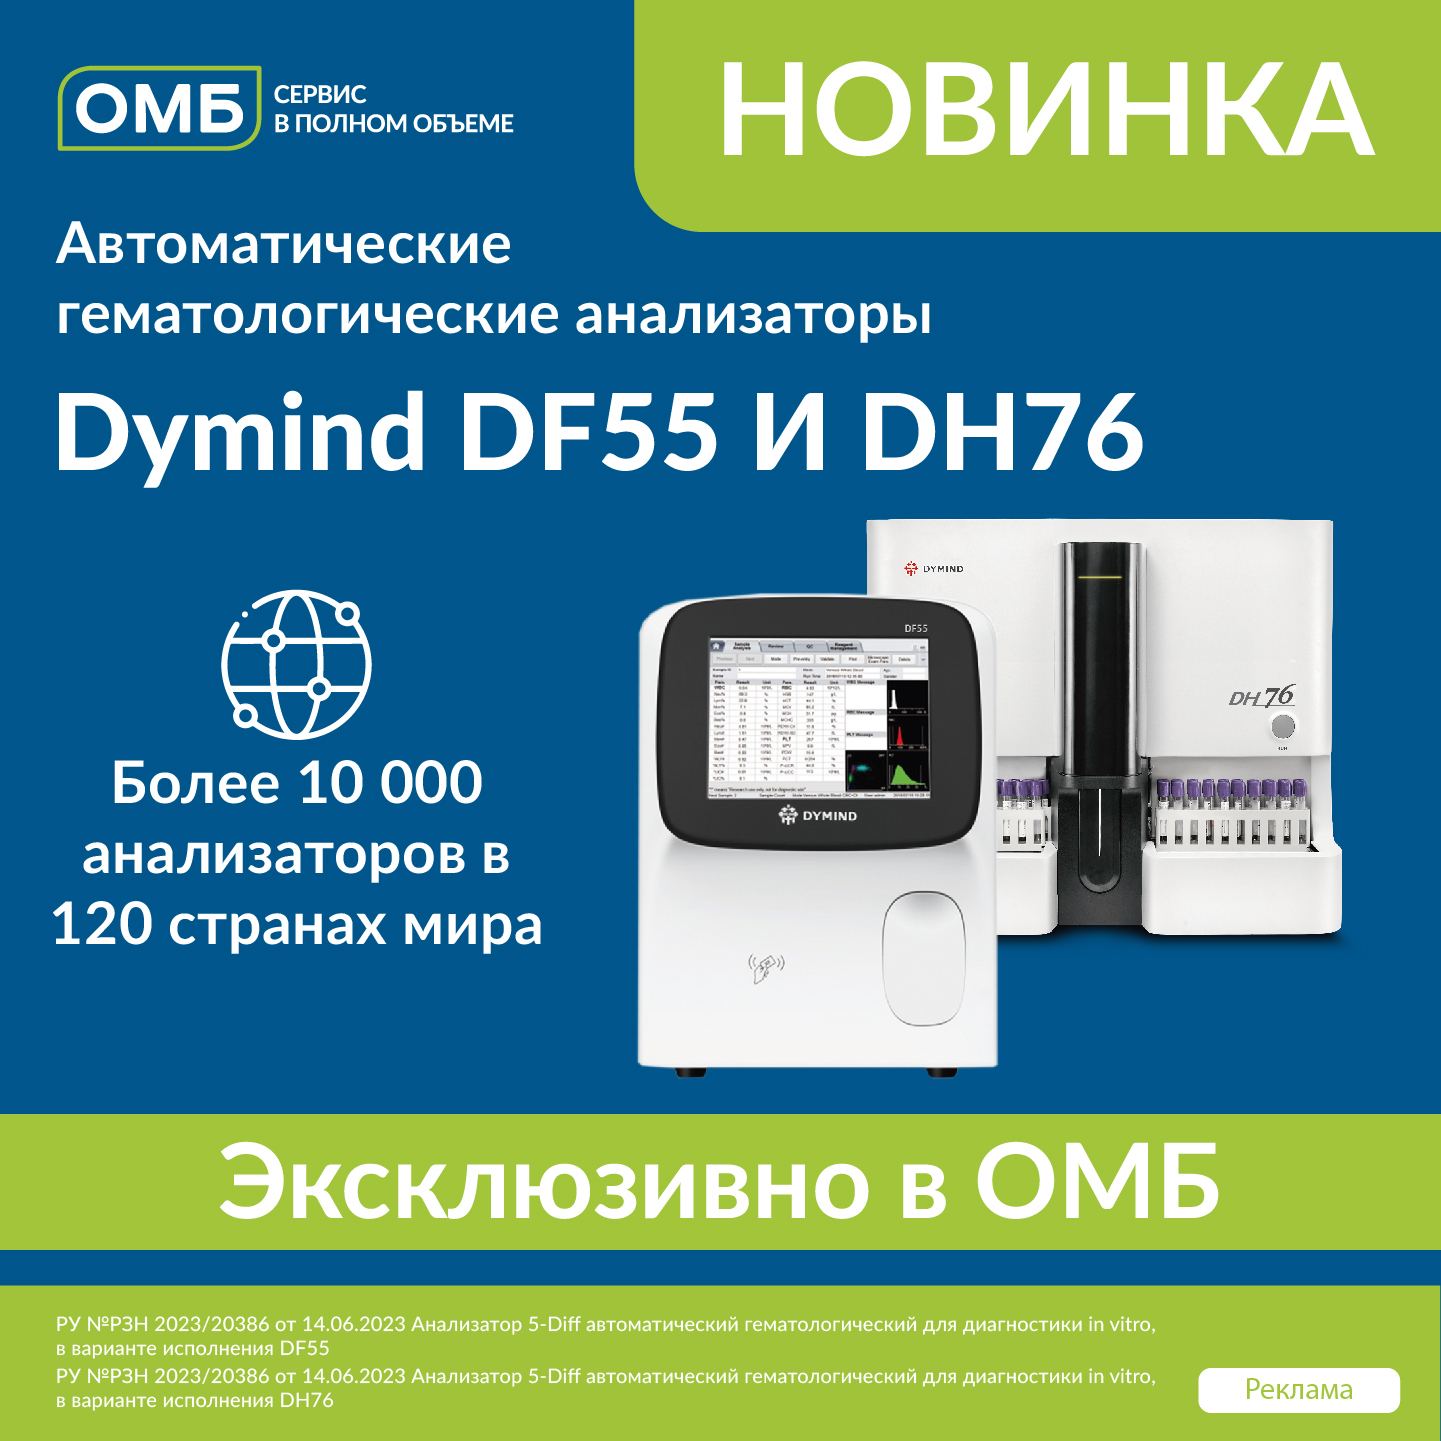 Dymind DF55 и DH76_2-01.jpg